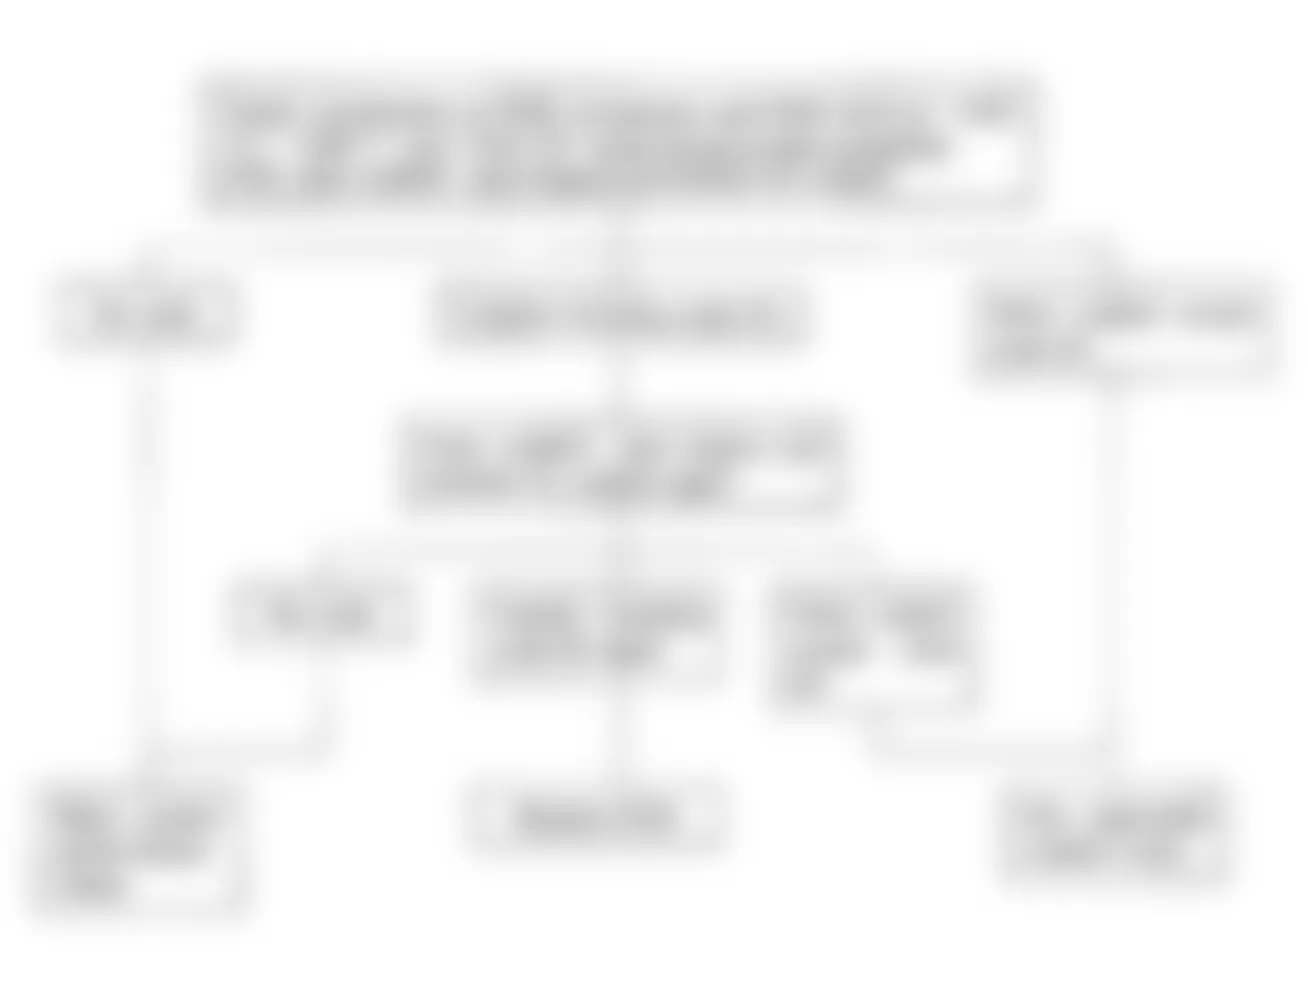 Isuzu Amigo S 1992 - Component Locations -  Code No. 55 Flow Chart, Faulty ECM